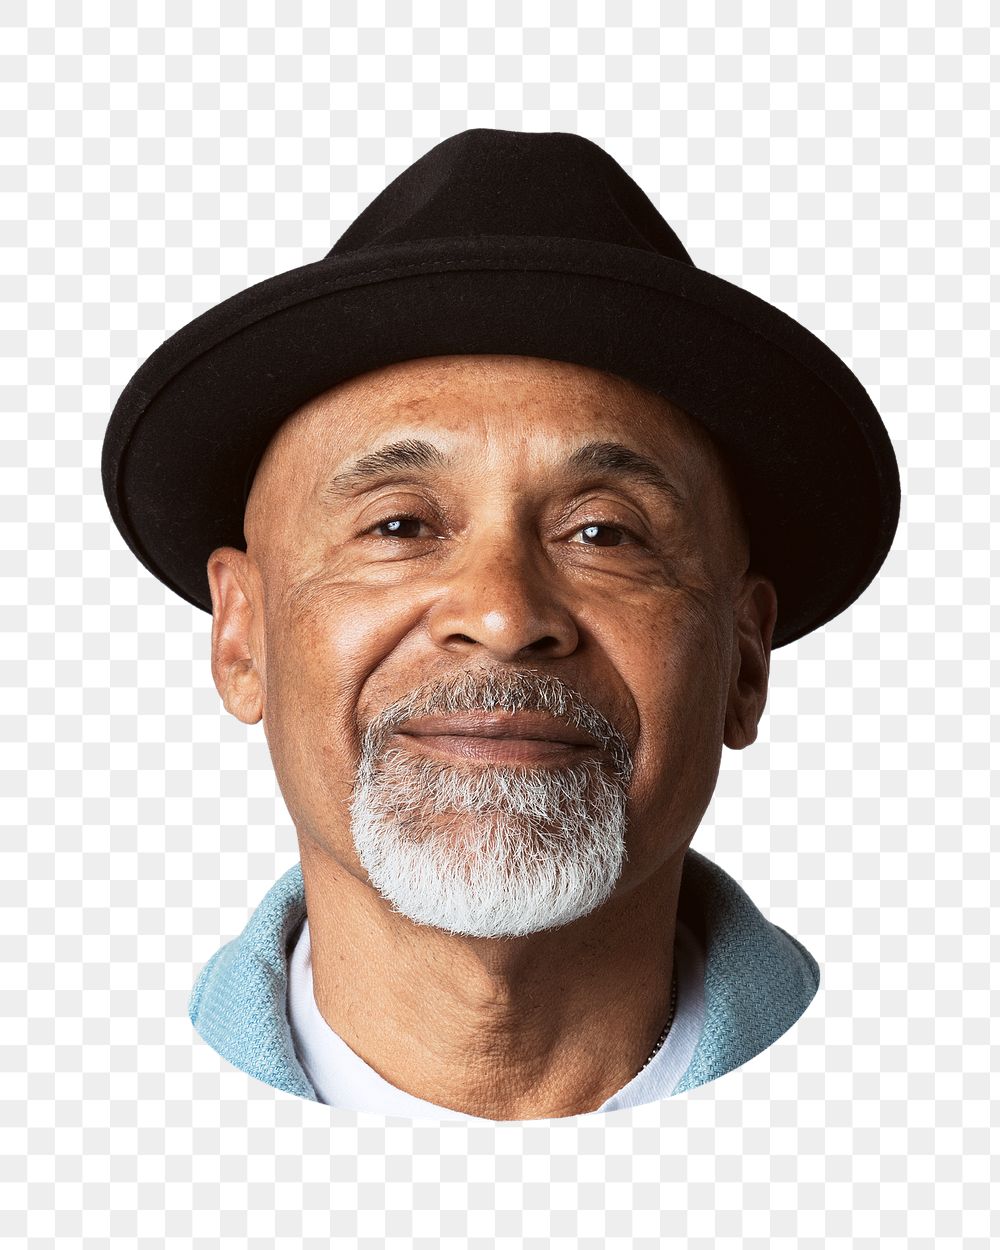 Senior man png wearing bowler hat, transparent background